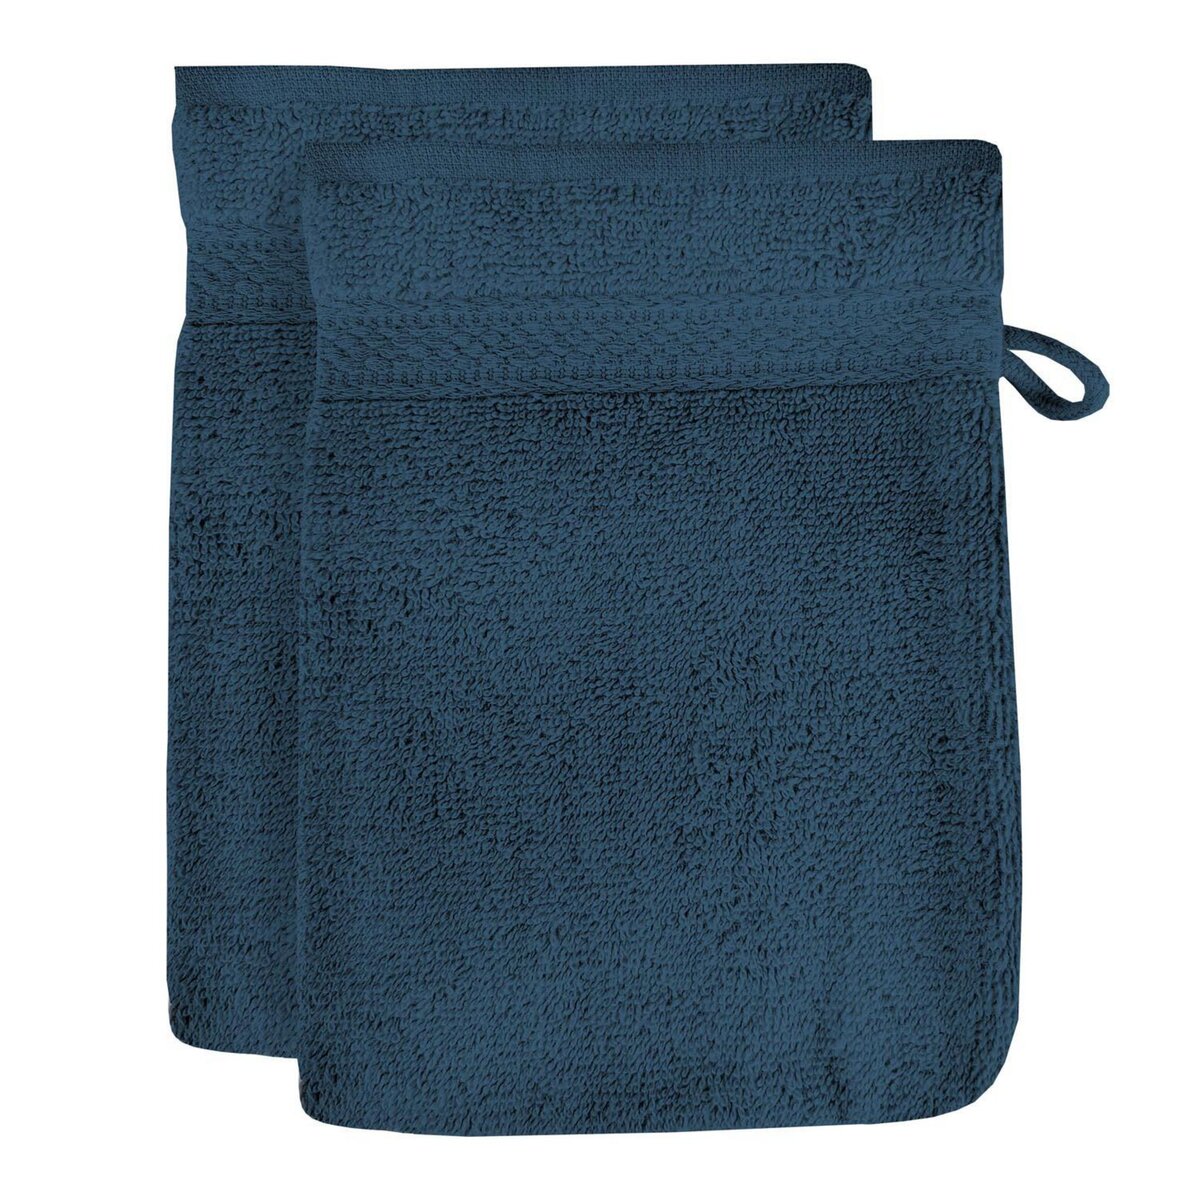 SOLEIL D'OCRE Lot de 2 gants de toilette en coton 500 gr/m2 LAGUNE bleu canard, par Soleil d'ocre